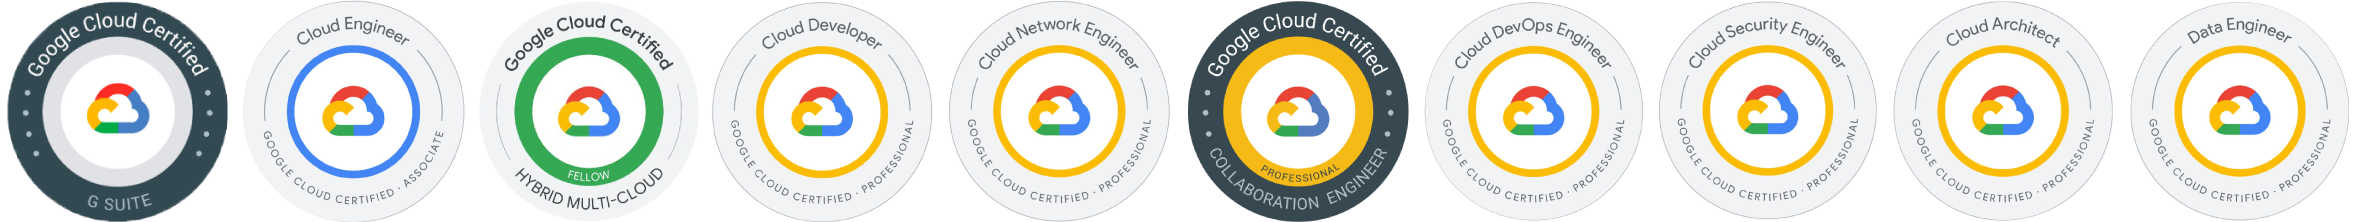 Google-Cert-Badges-2022-lg